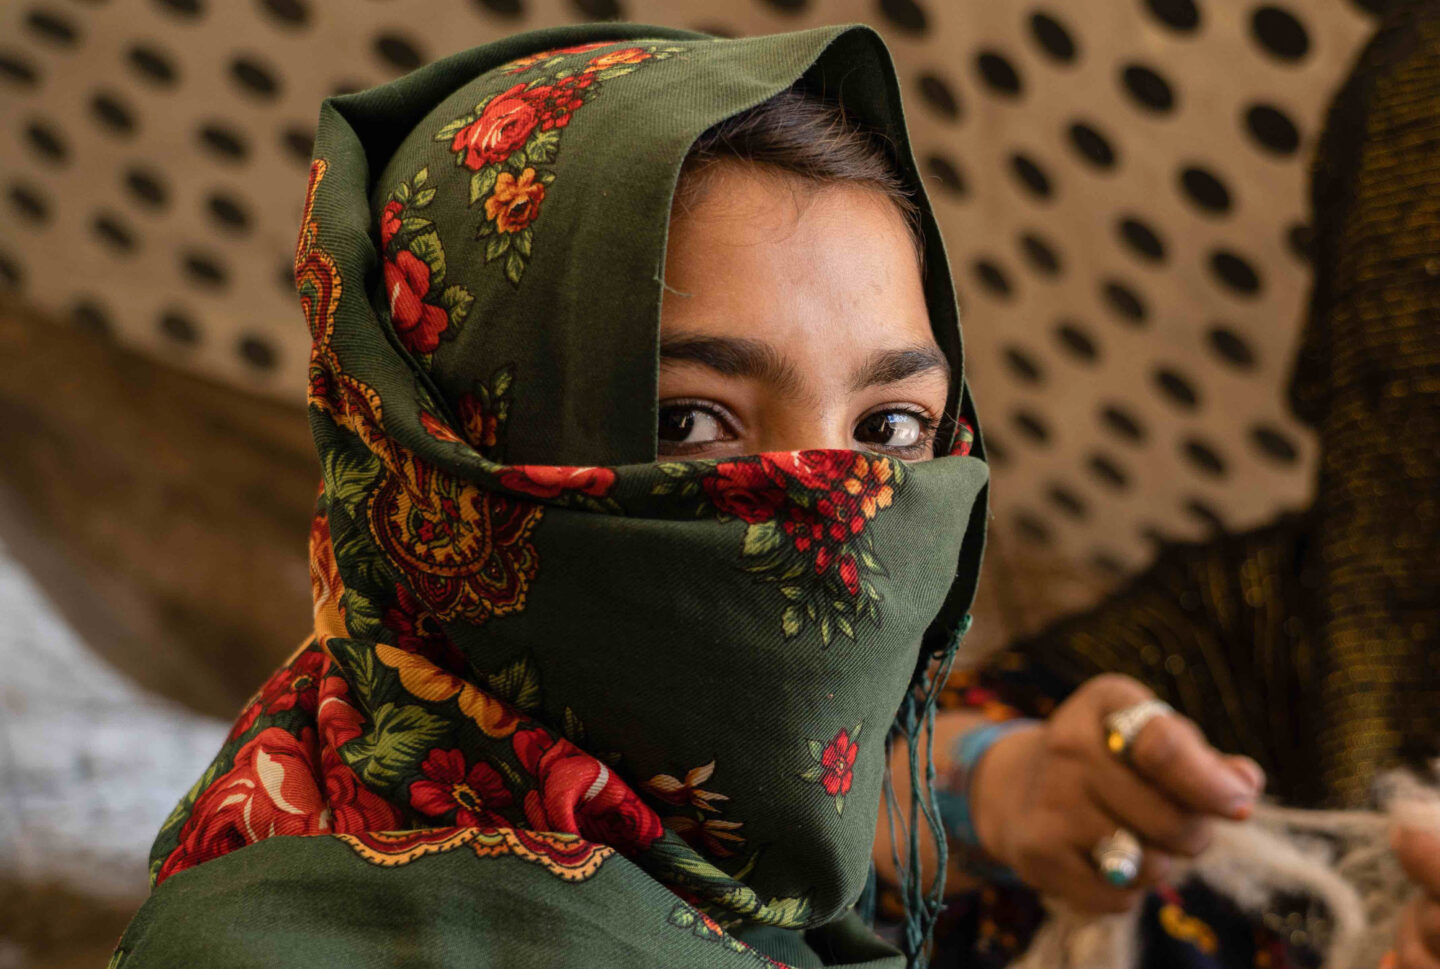 Les droits des femmes reculent en Afghanistan